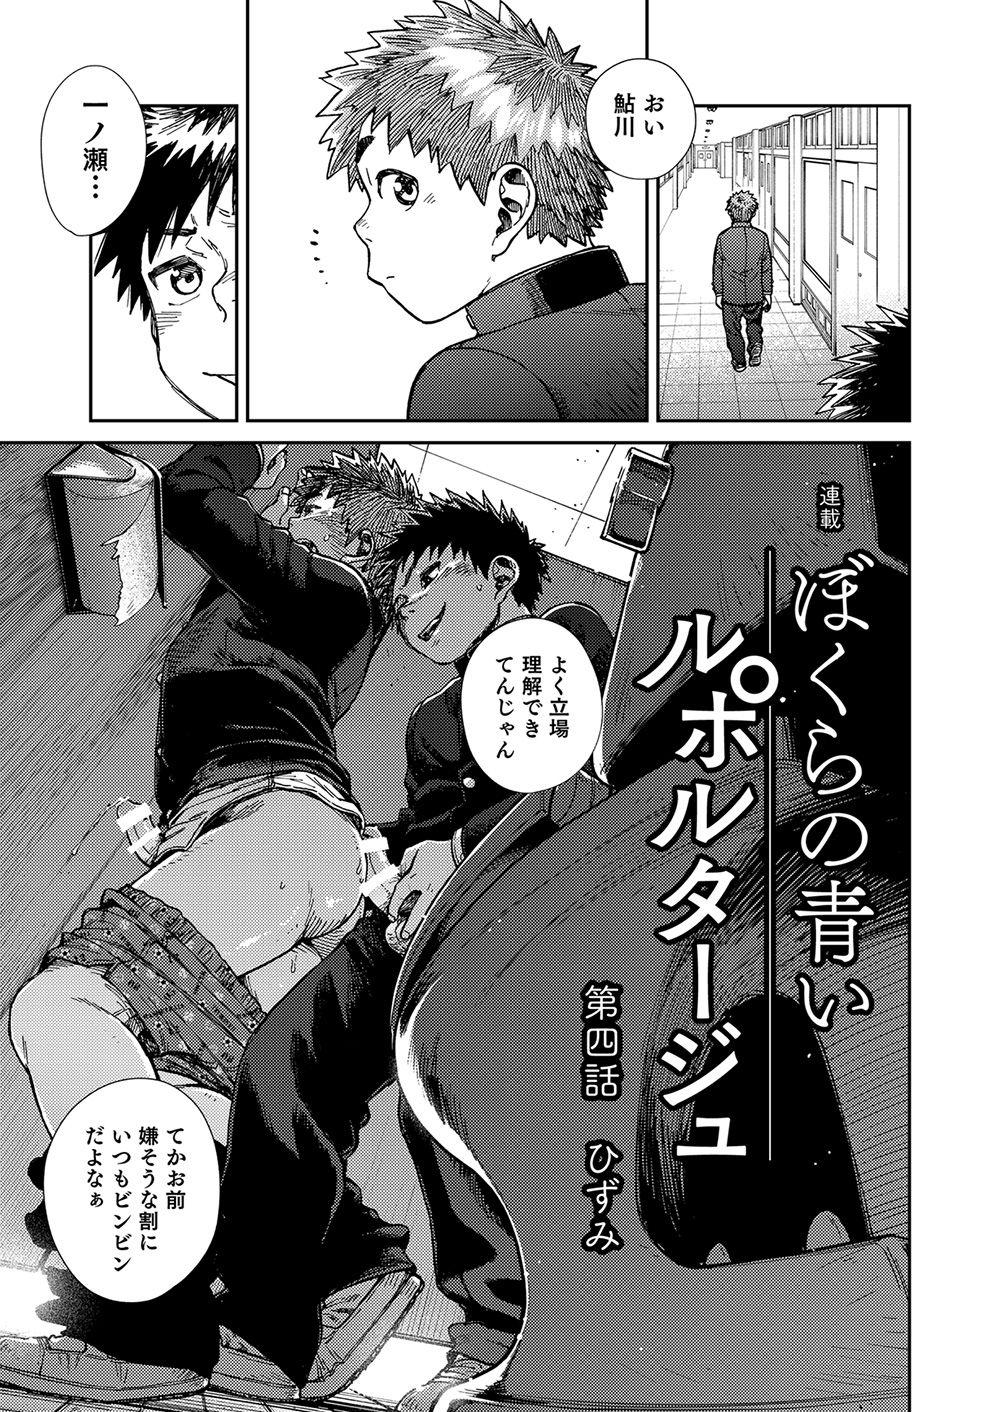 Cameltoe Manga Shounen Zoom Vol. 23 Hoe - Page 9